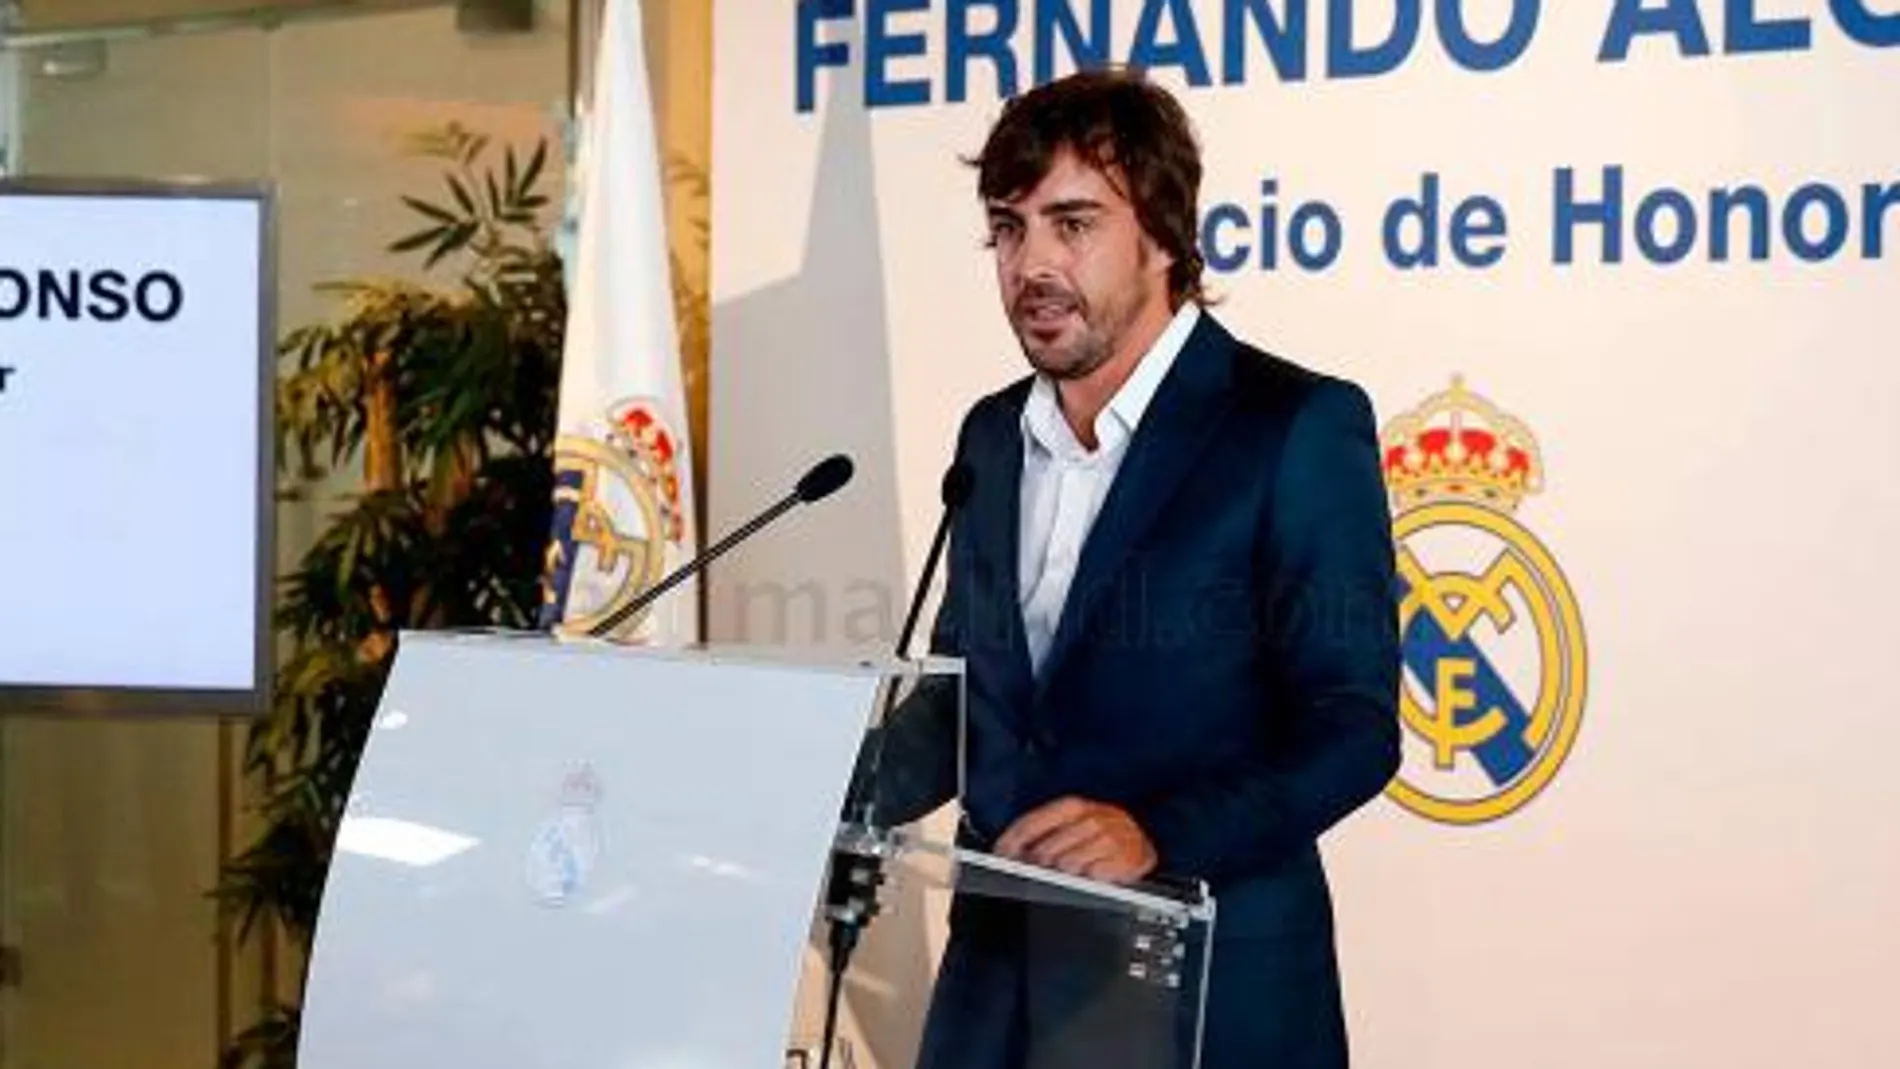 Fernando Alonso tras su homenaje como socio de honor